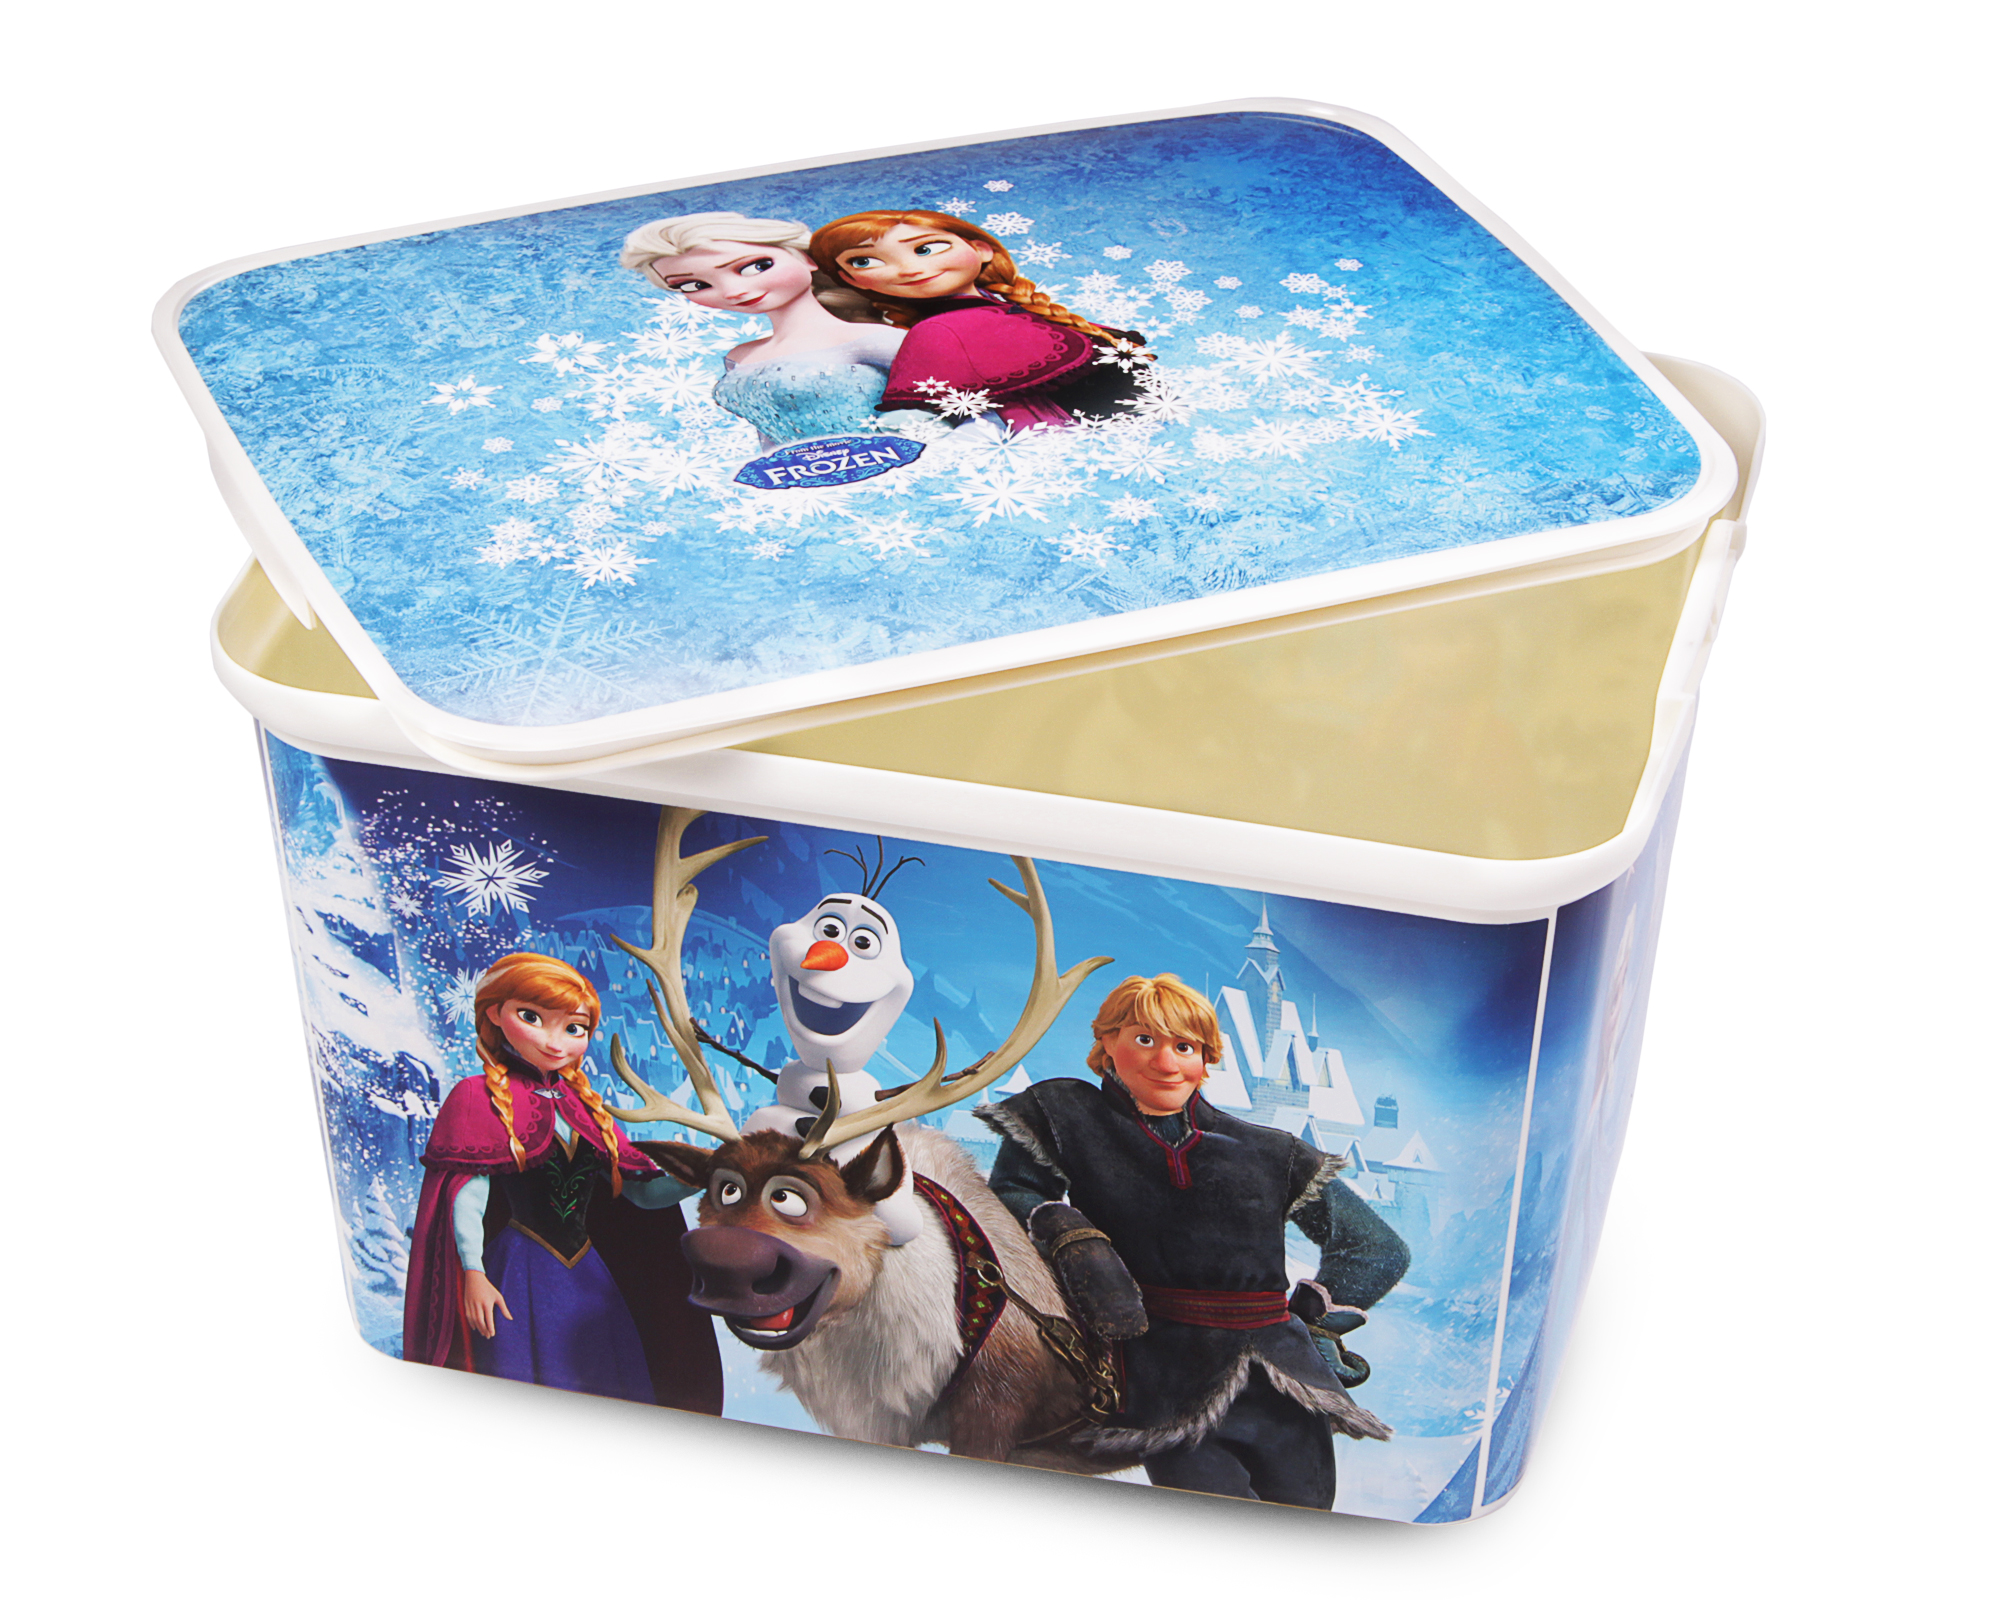 B-Ware Disney Frozen Spielzeugkiste Aufbewahrungs box Spielzeug Eiskönigin Elsa 